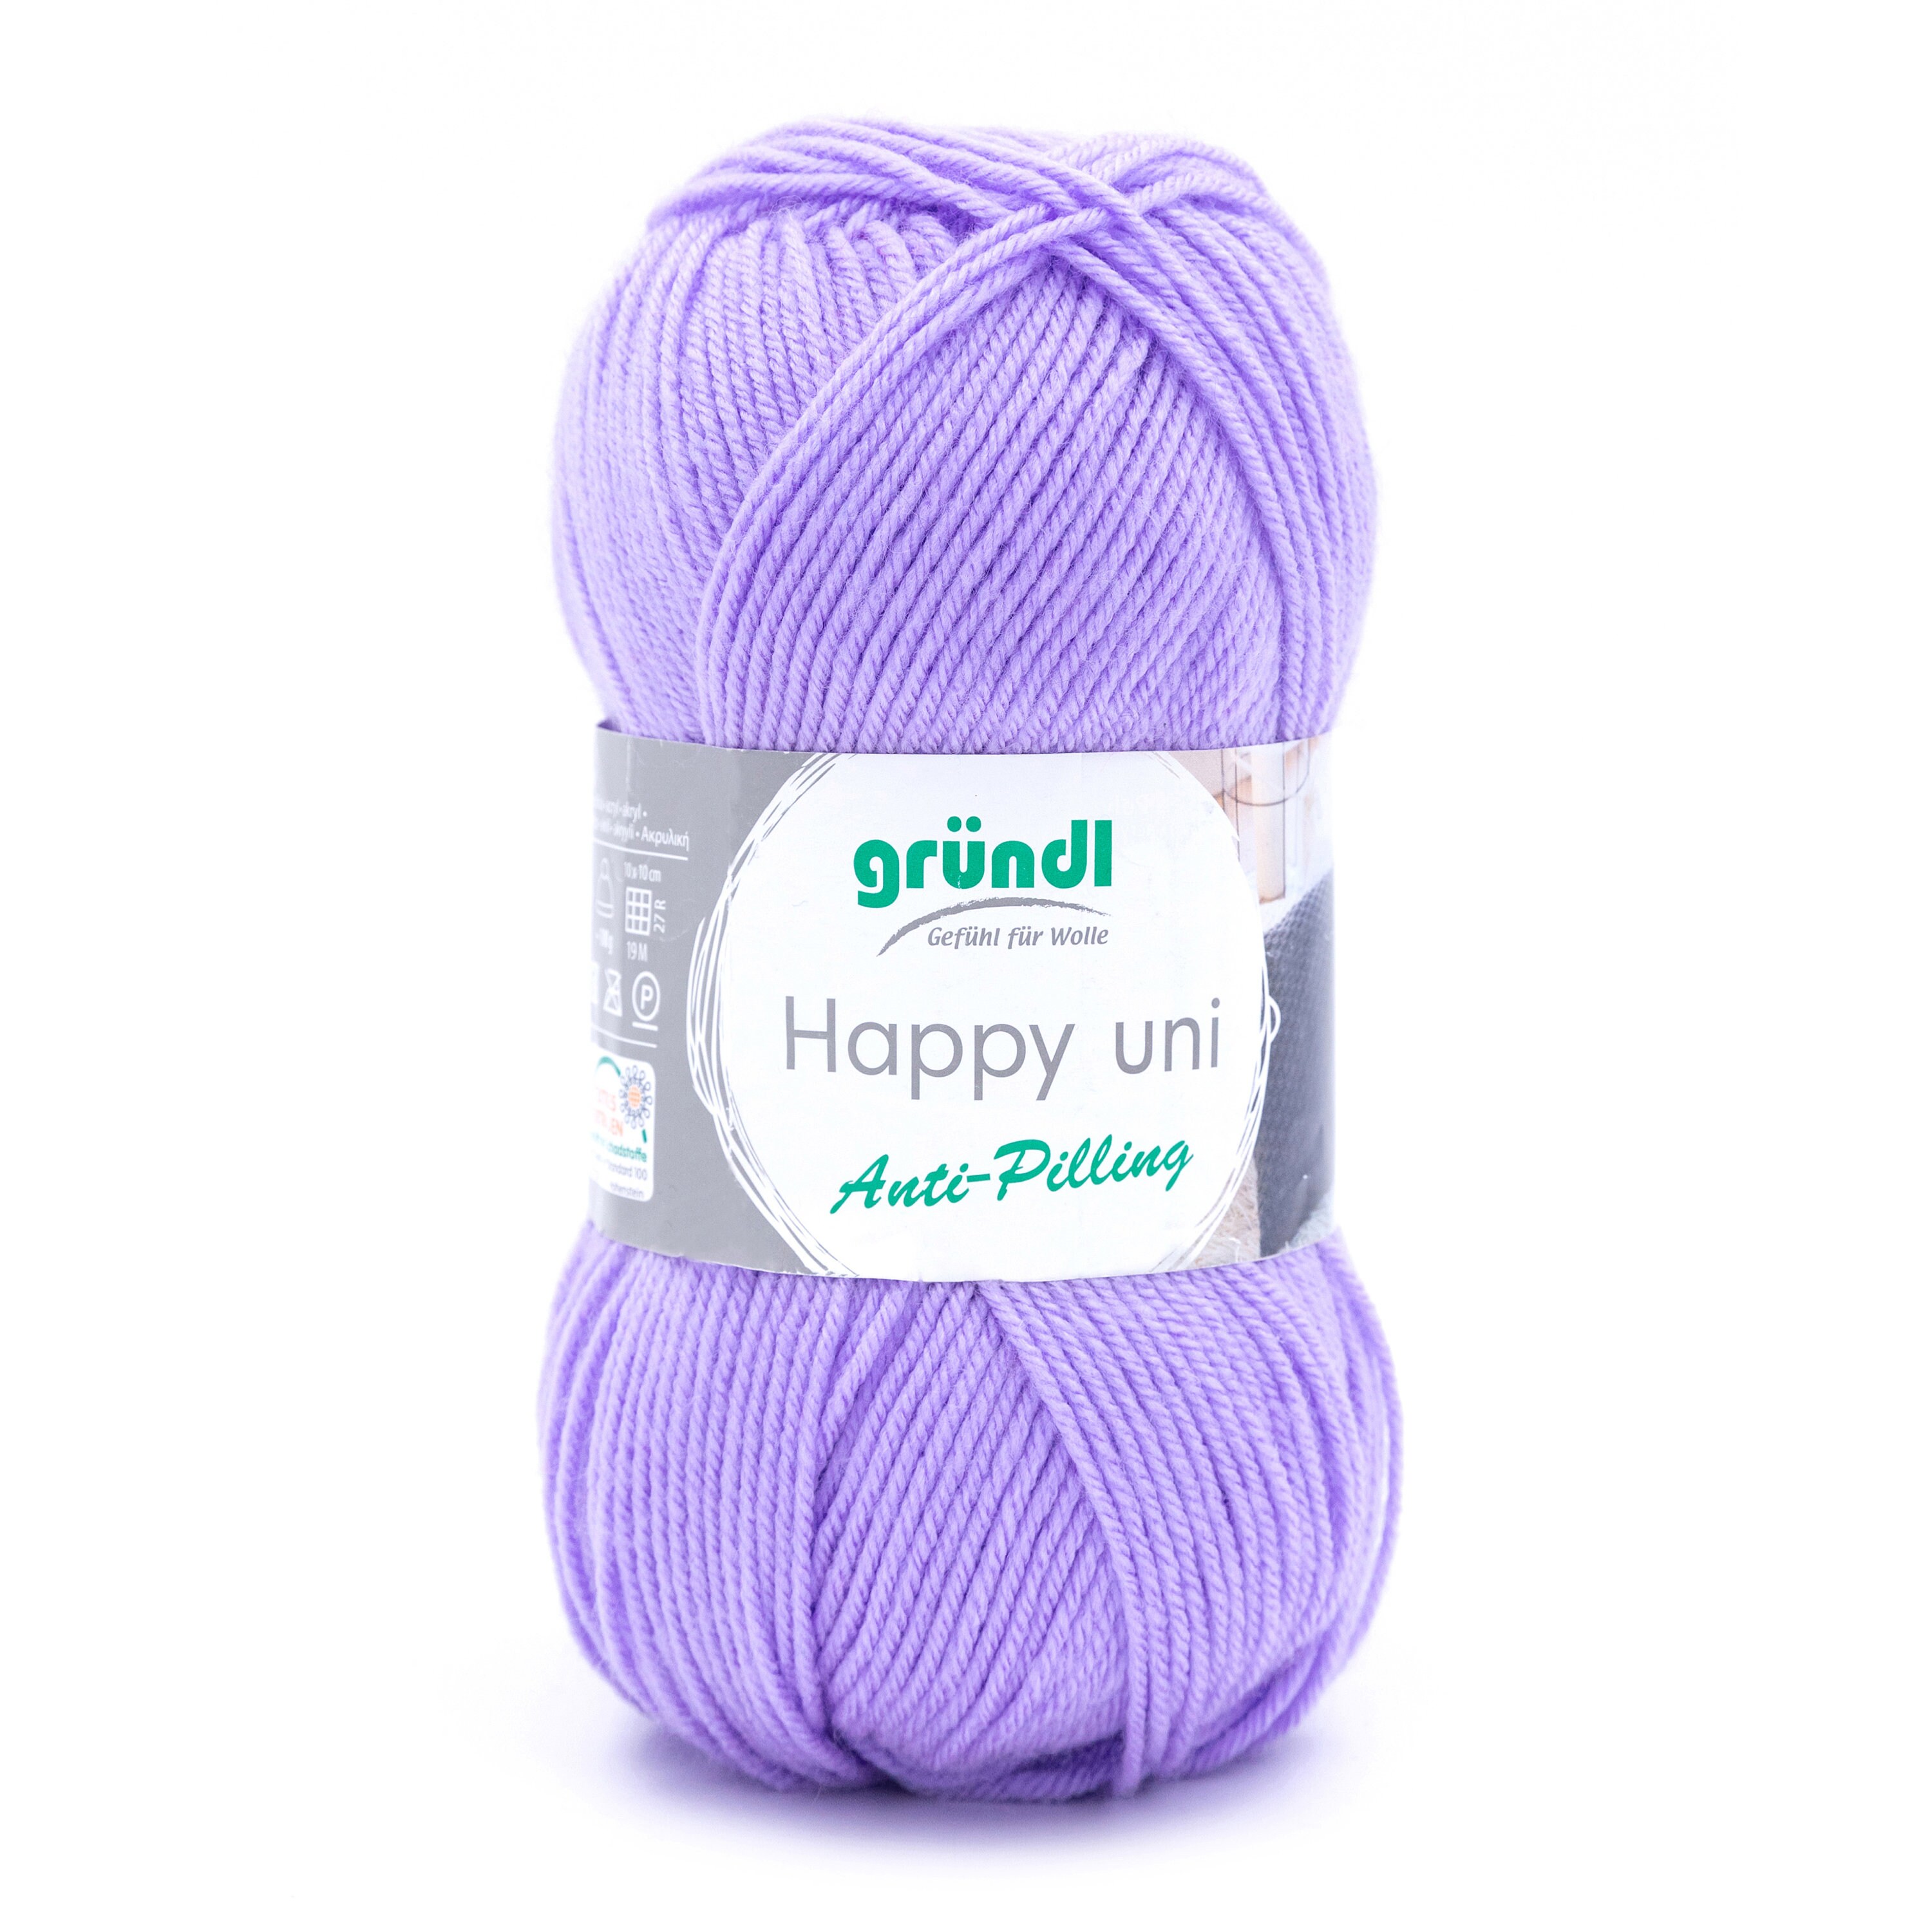 10 ovillos de lana Gründl para Amigurumi 100% algodón